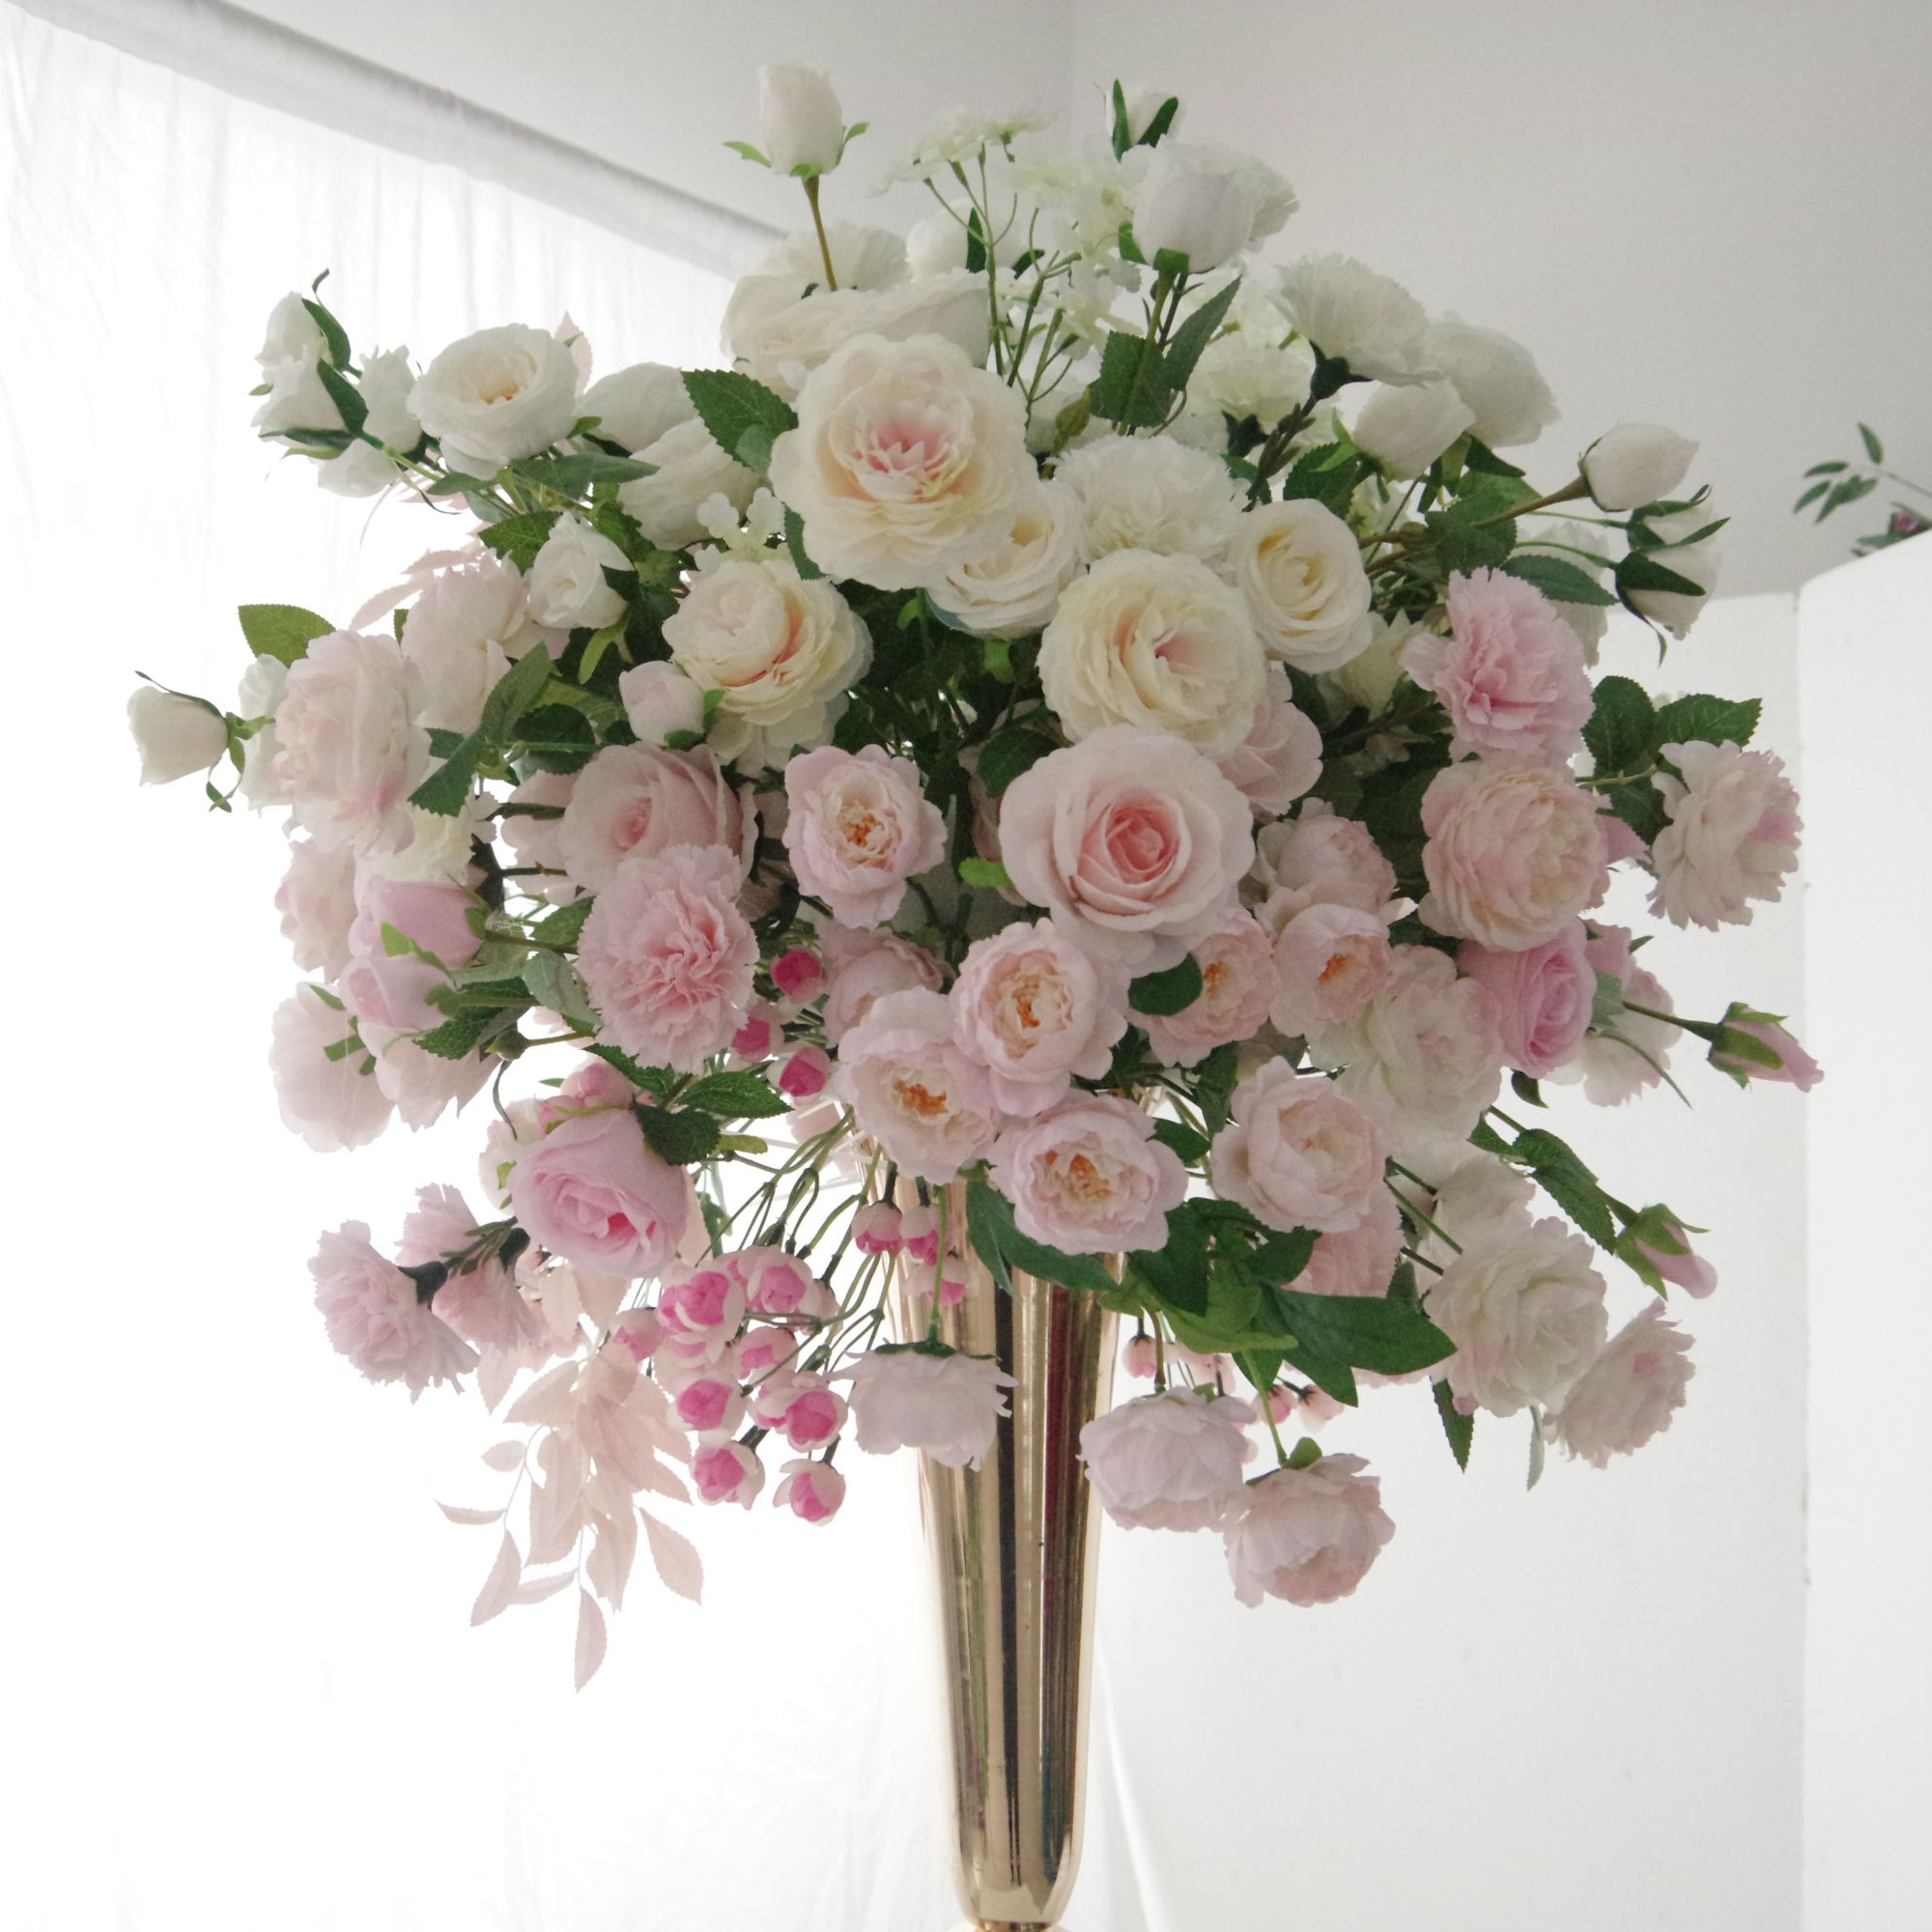 Chuchotements élégants - Délicate gamme de roses roses au milieu d'un voile de fleurs blanches FB-060